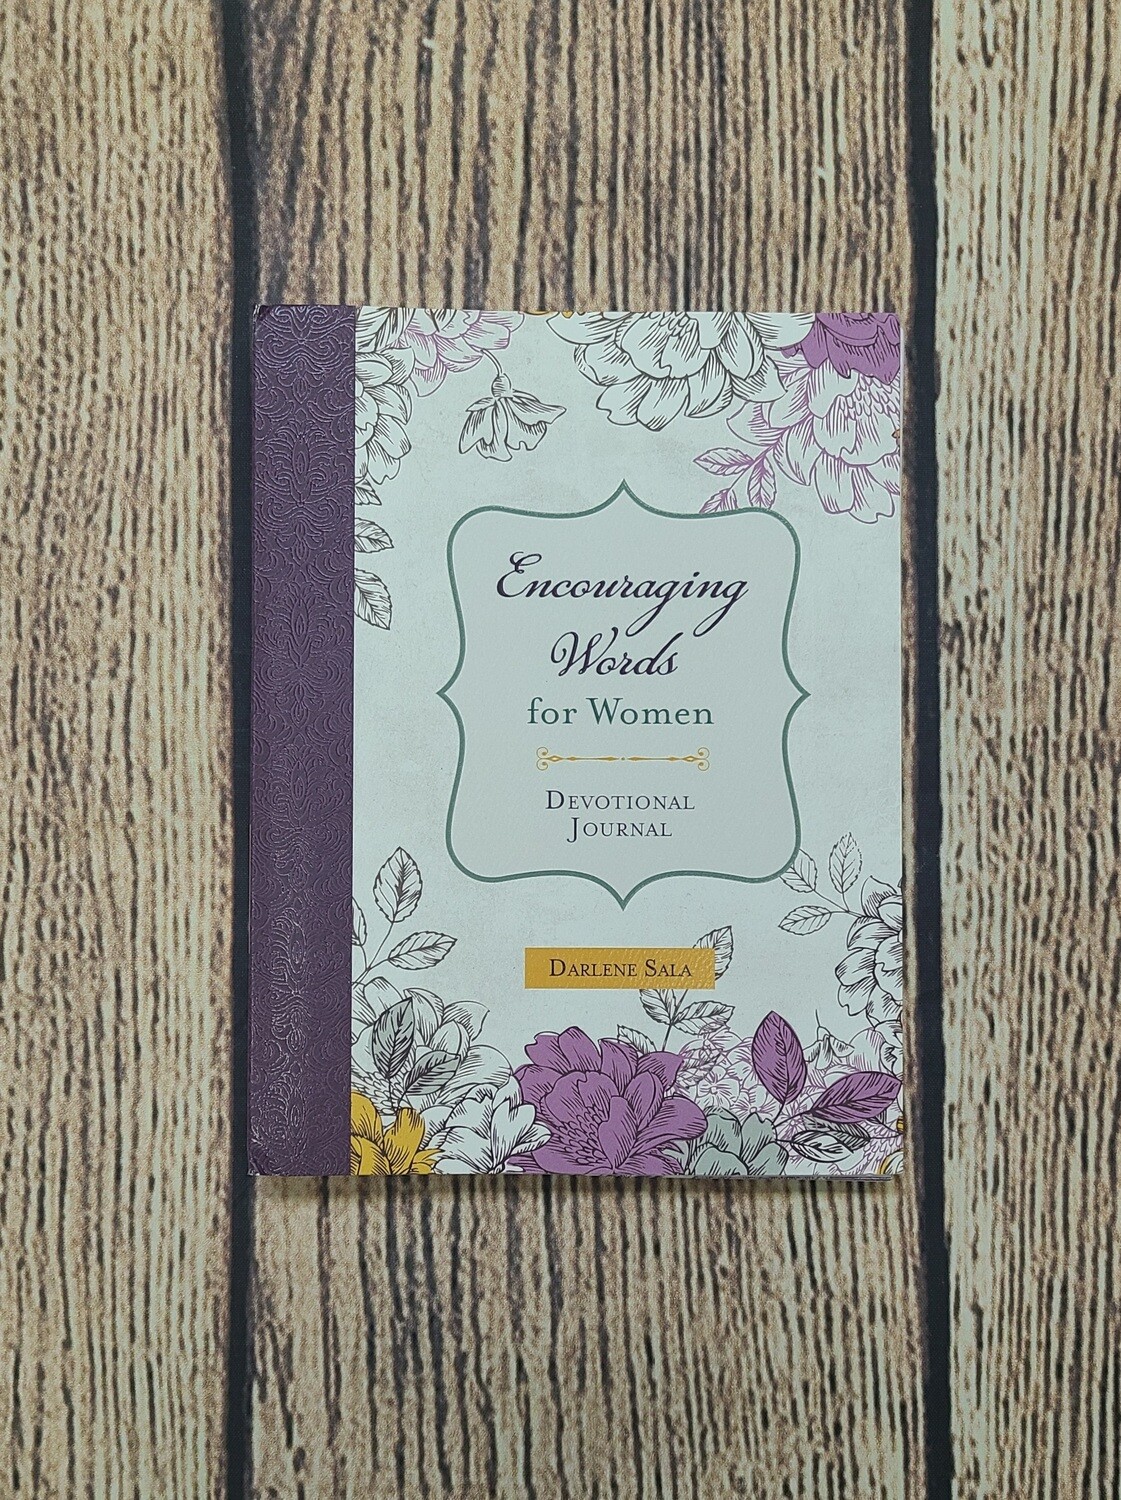 Encouraging Words for Women Devotional Journal by Darlene Sala